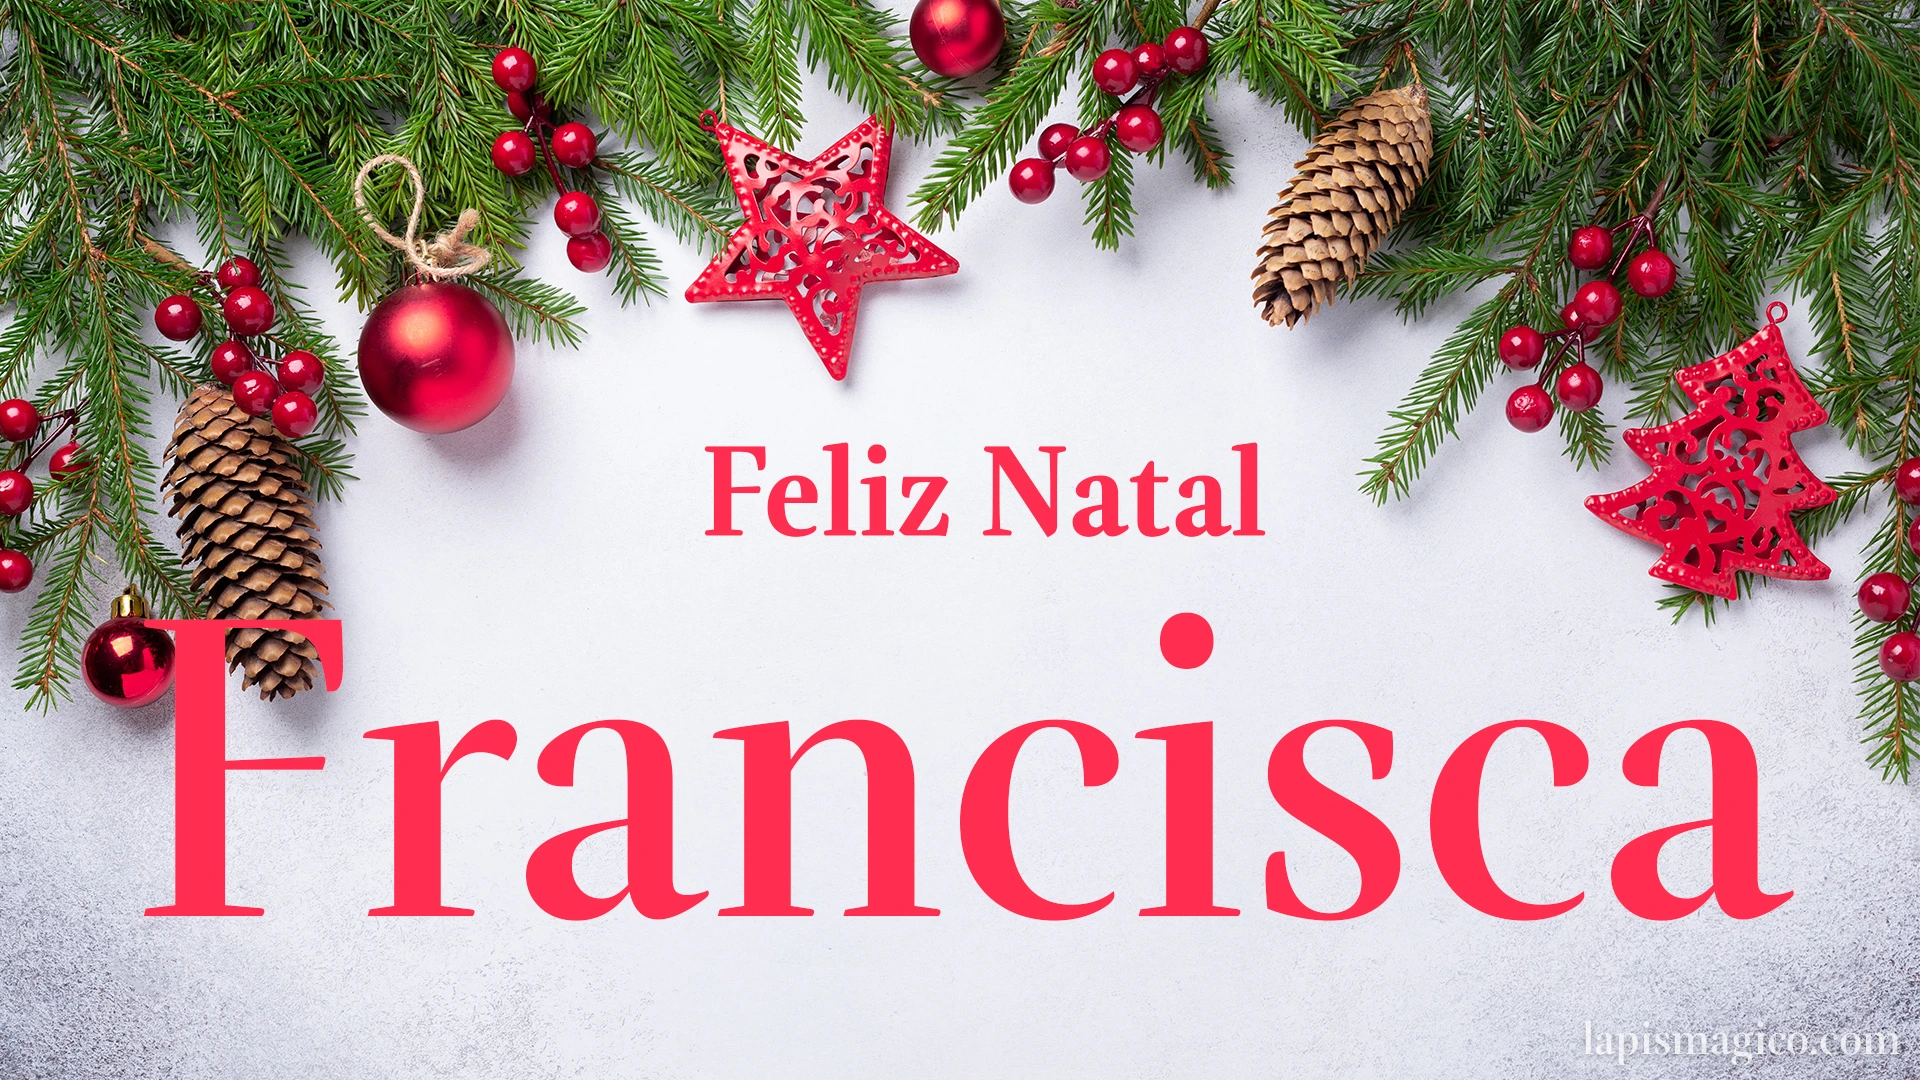 Oh Francisca, cinco postais de Feliz Natal Postal com o teu nome